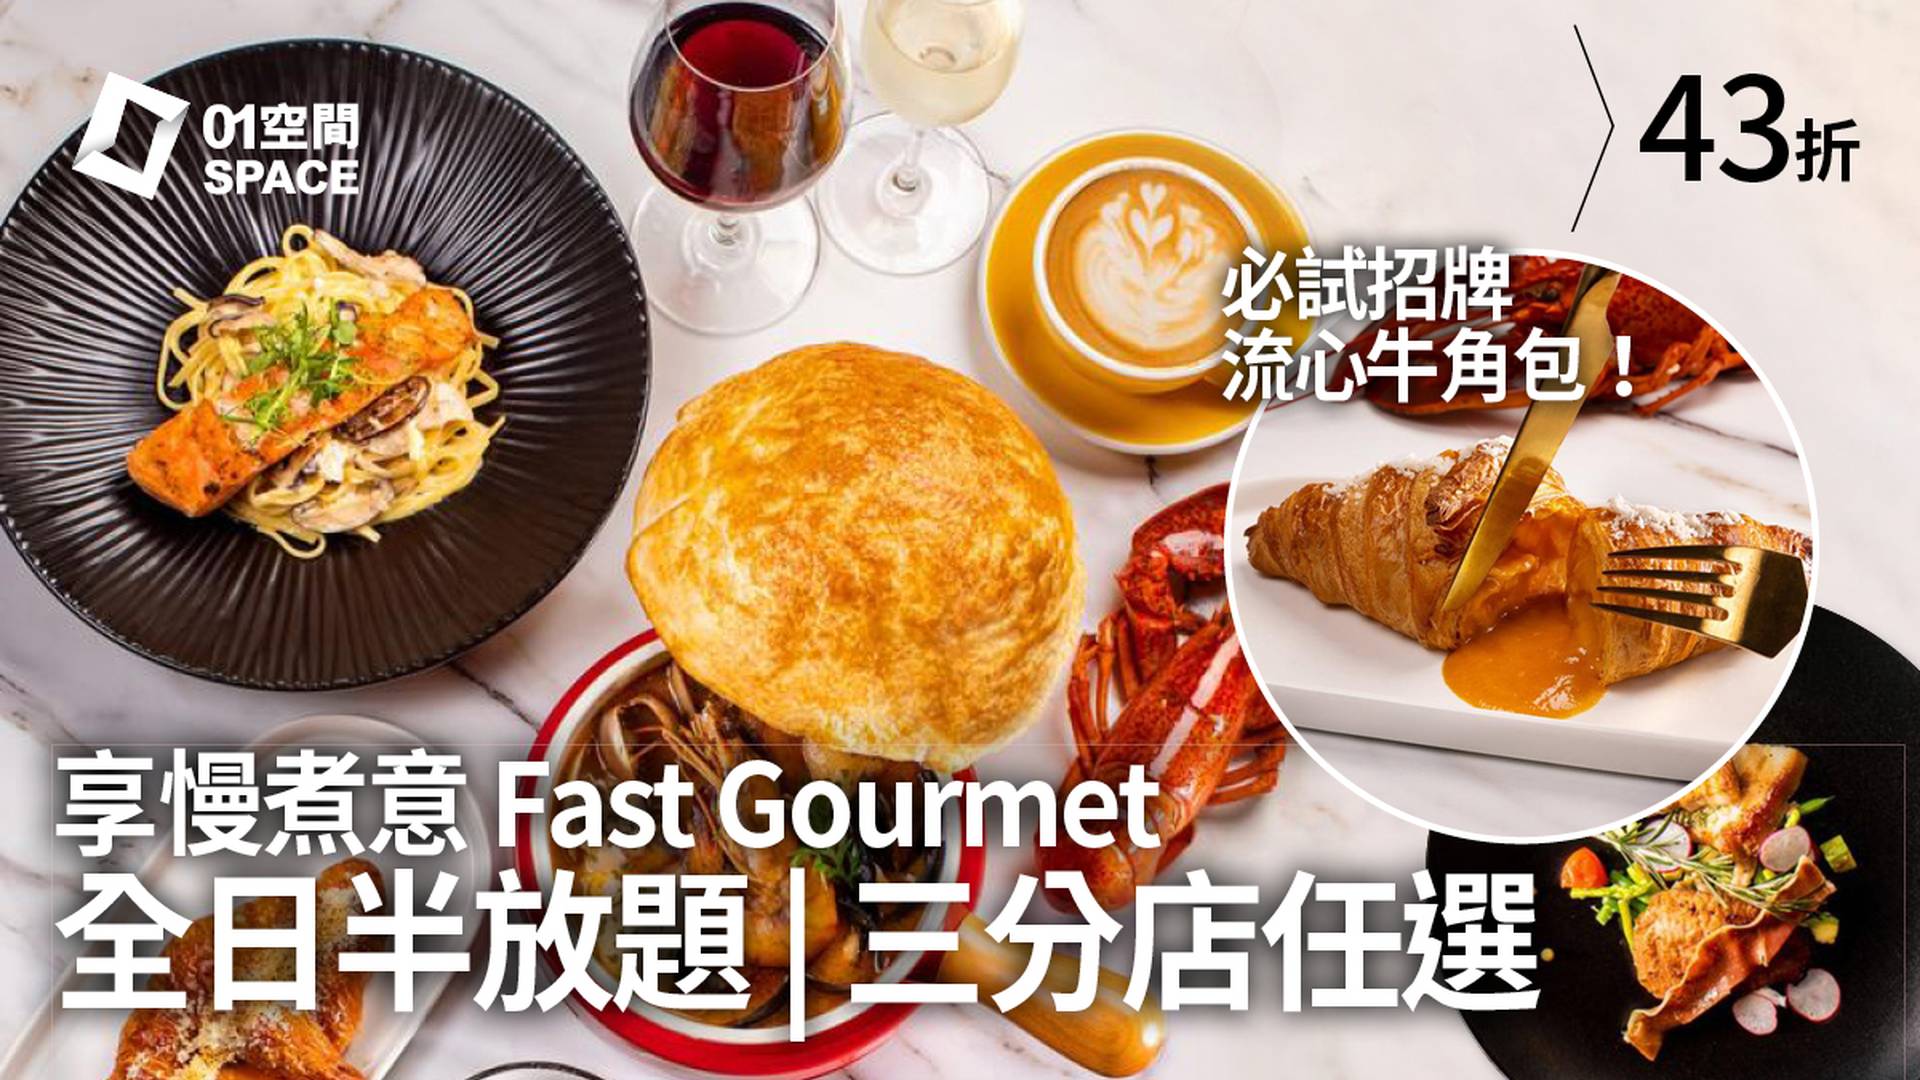 享慢煮意 Fast Gourmet | 半放題 | 招牌⿓蝦湯流⼼⽜⾓包 | 元朗分店